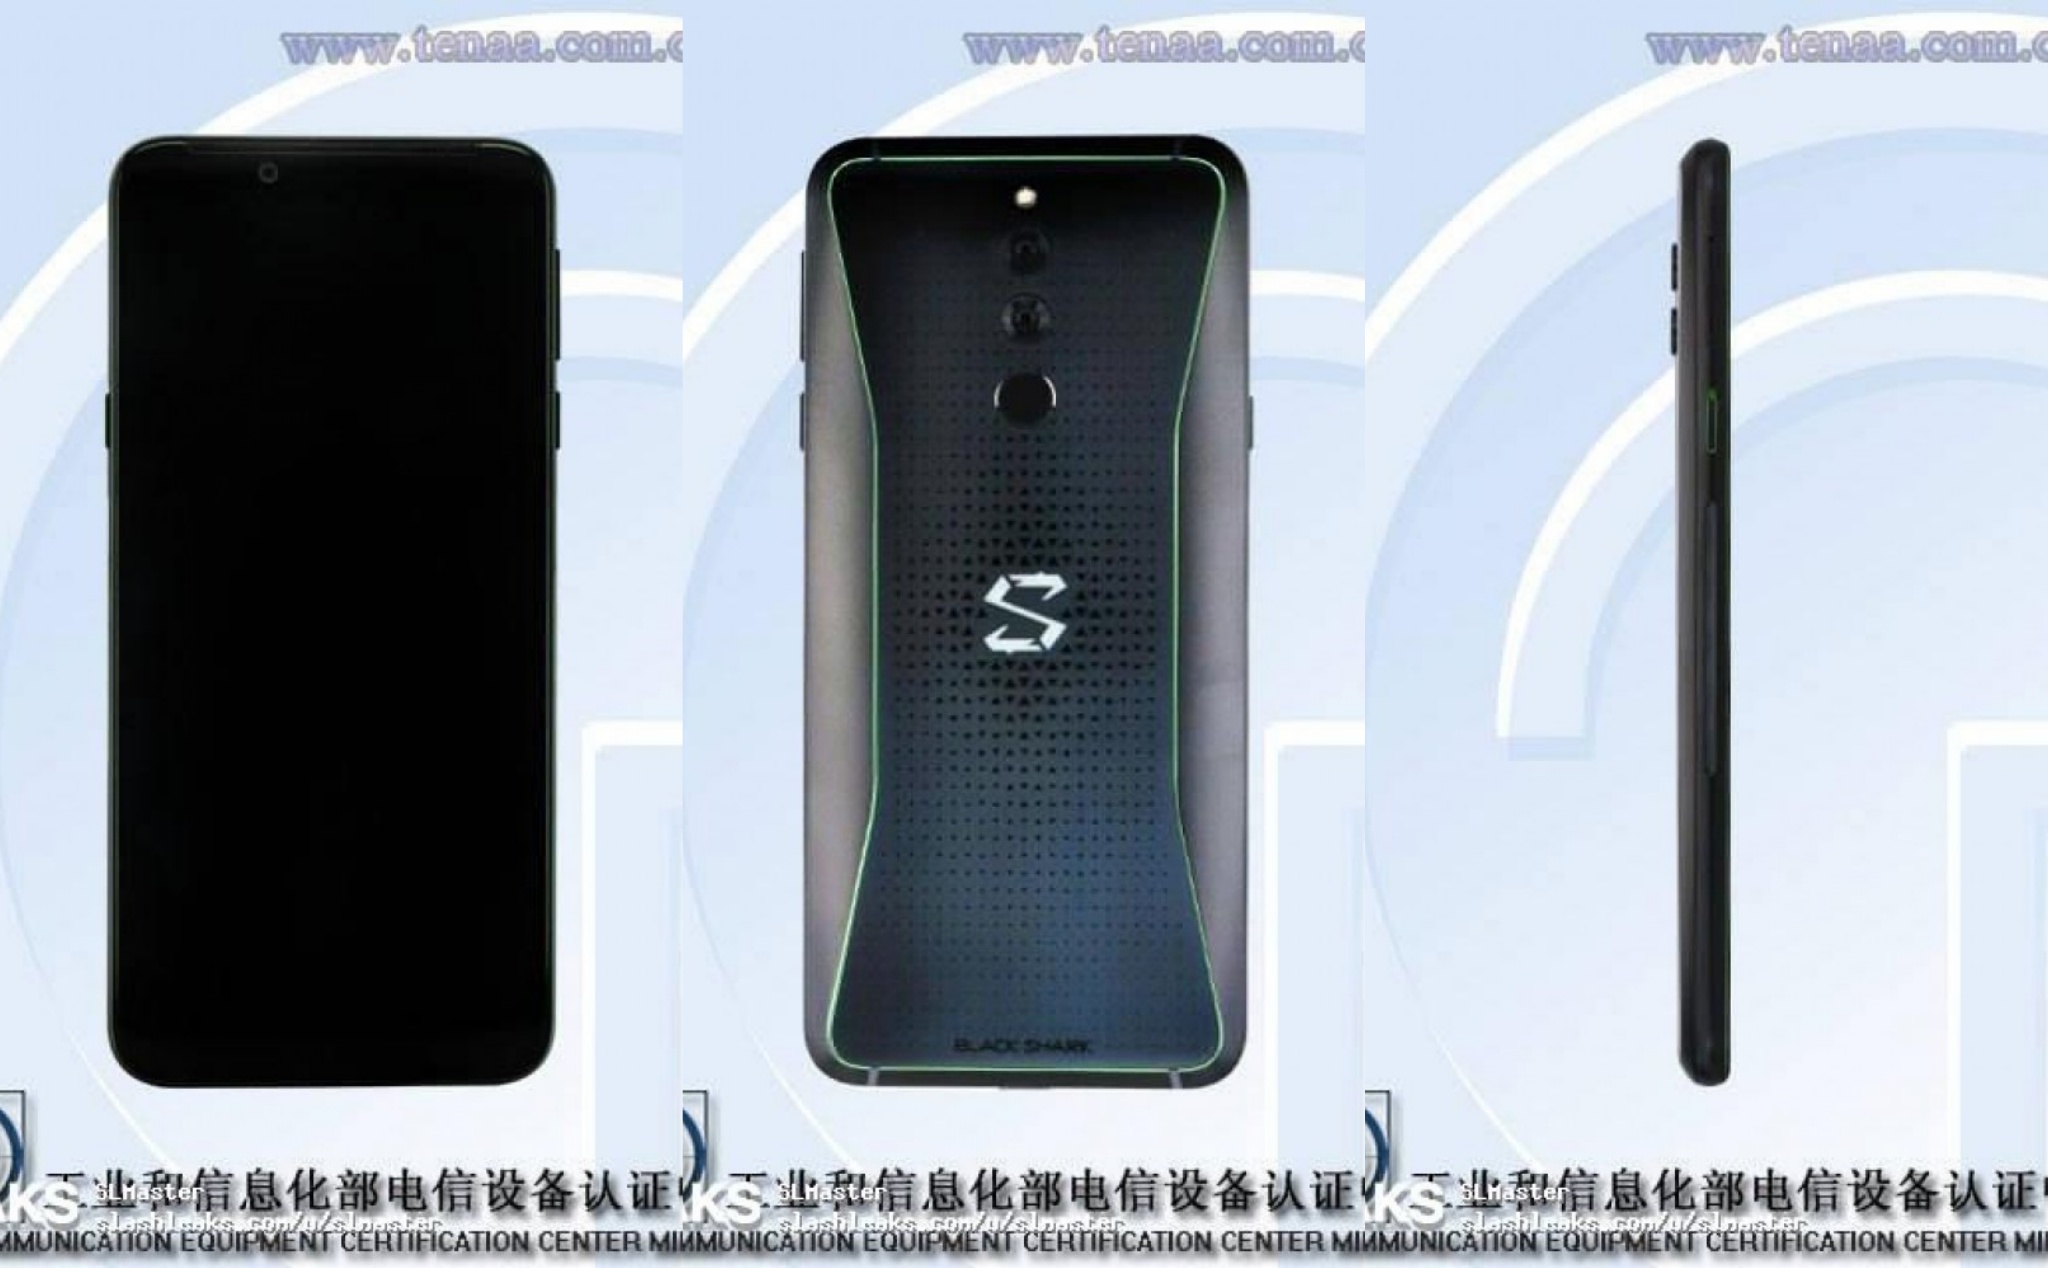 Đã có hình ảnh của Xiaomi Black Shark 2, đổi nhẹ thiết kế, màn hình giữ nguyên